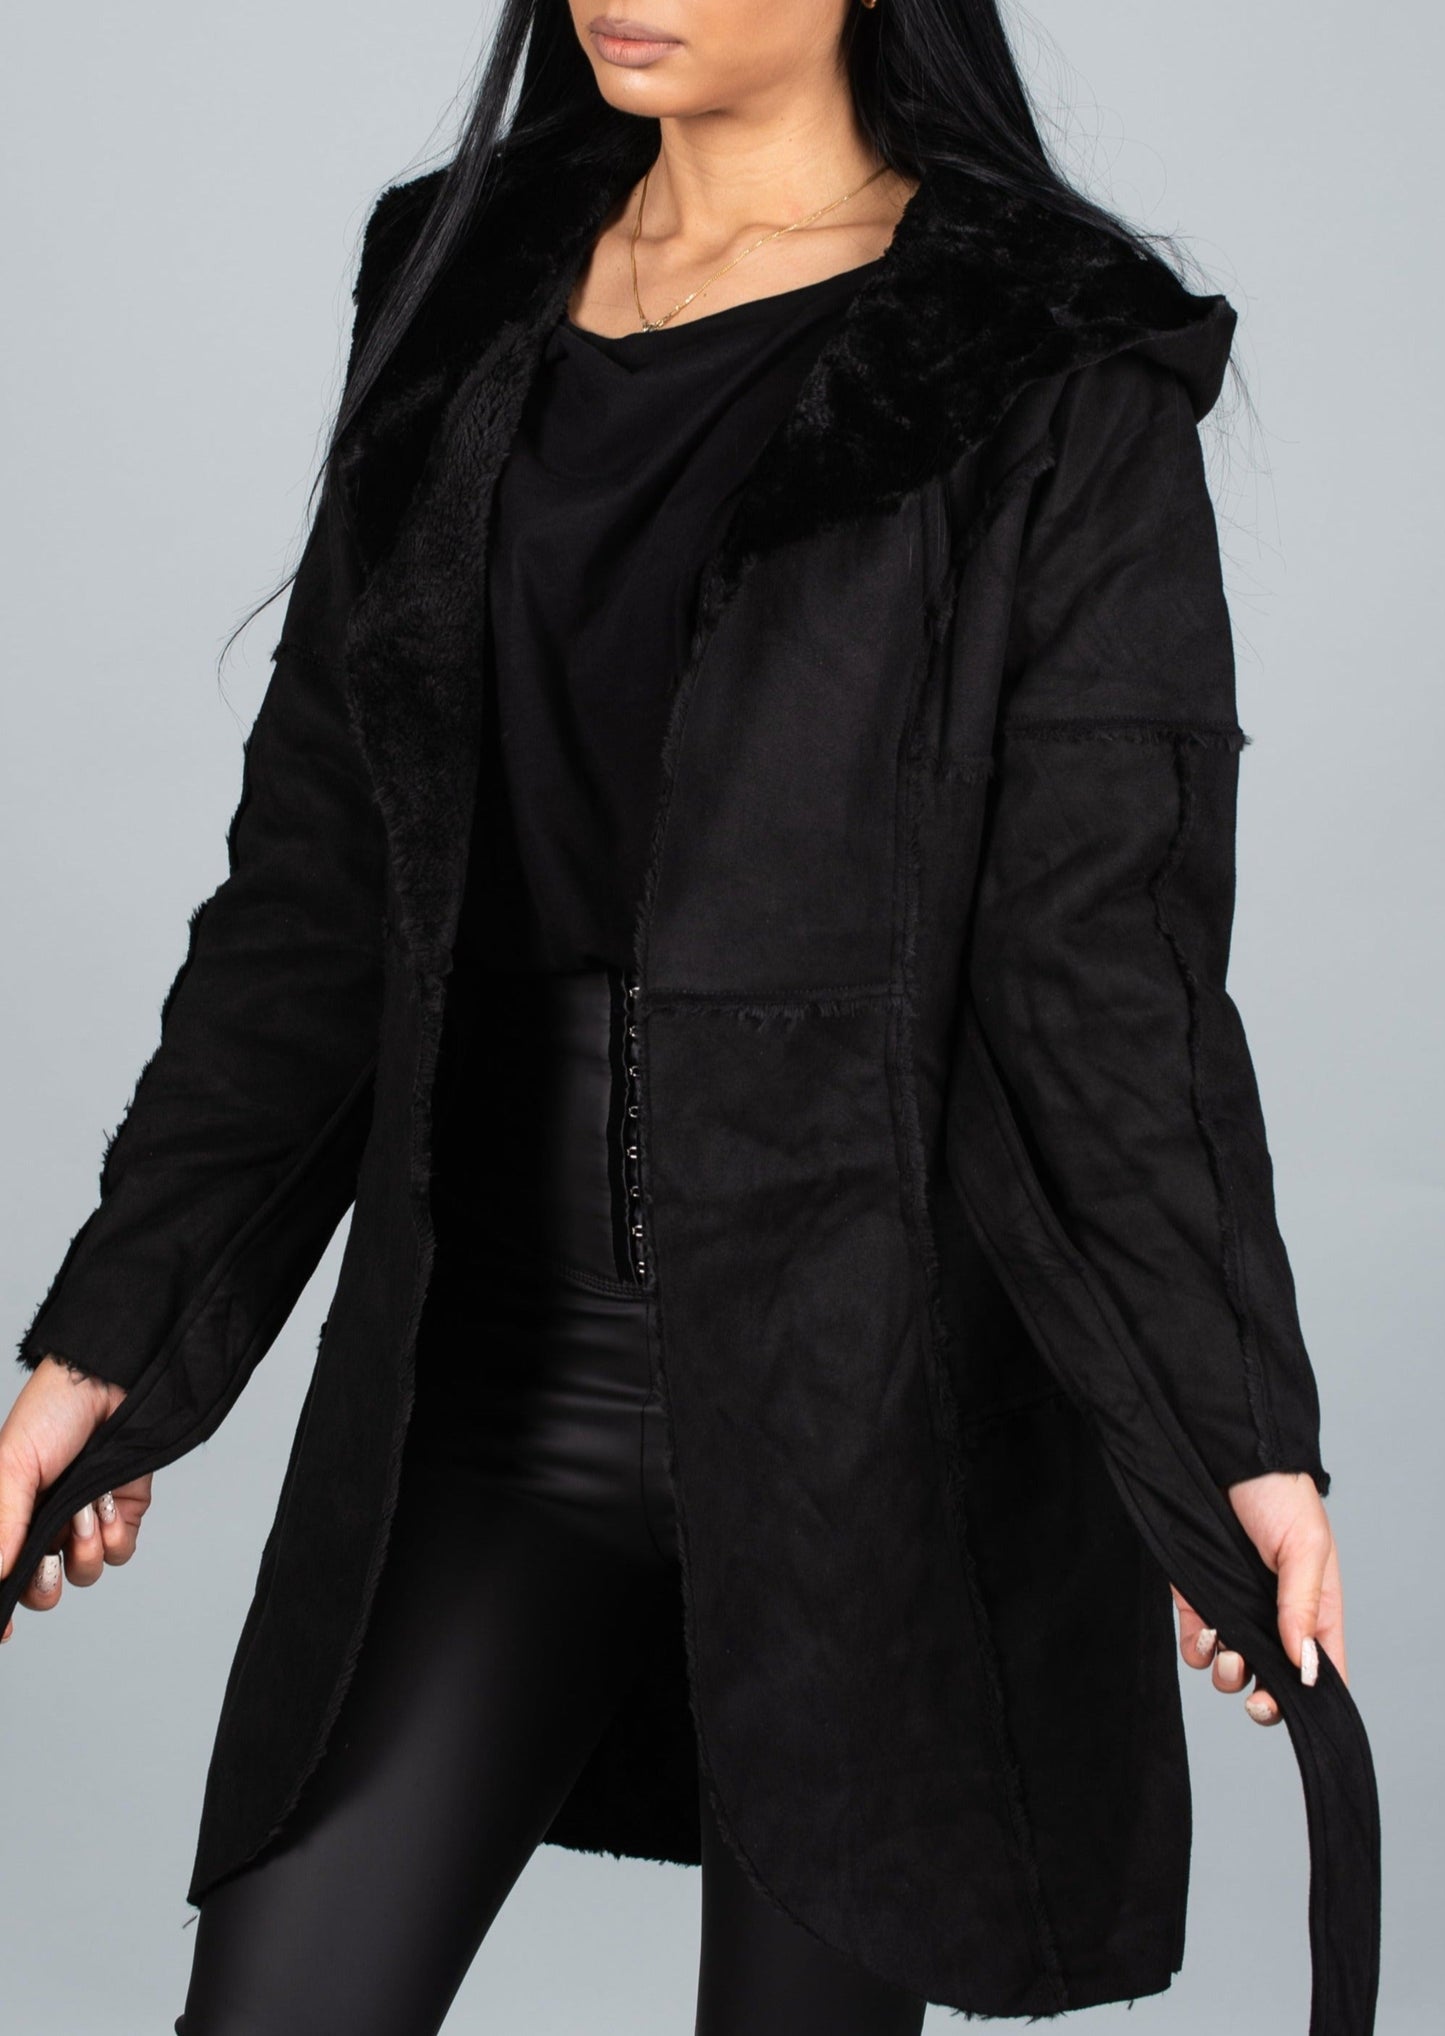 Дамскo палто MONOSA  https://bvseductive.com/products/women-s-coats-monosa  100 % полиестер стилно дамско палто тип кожухче подарете си топлина през студените дни